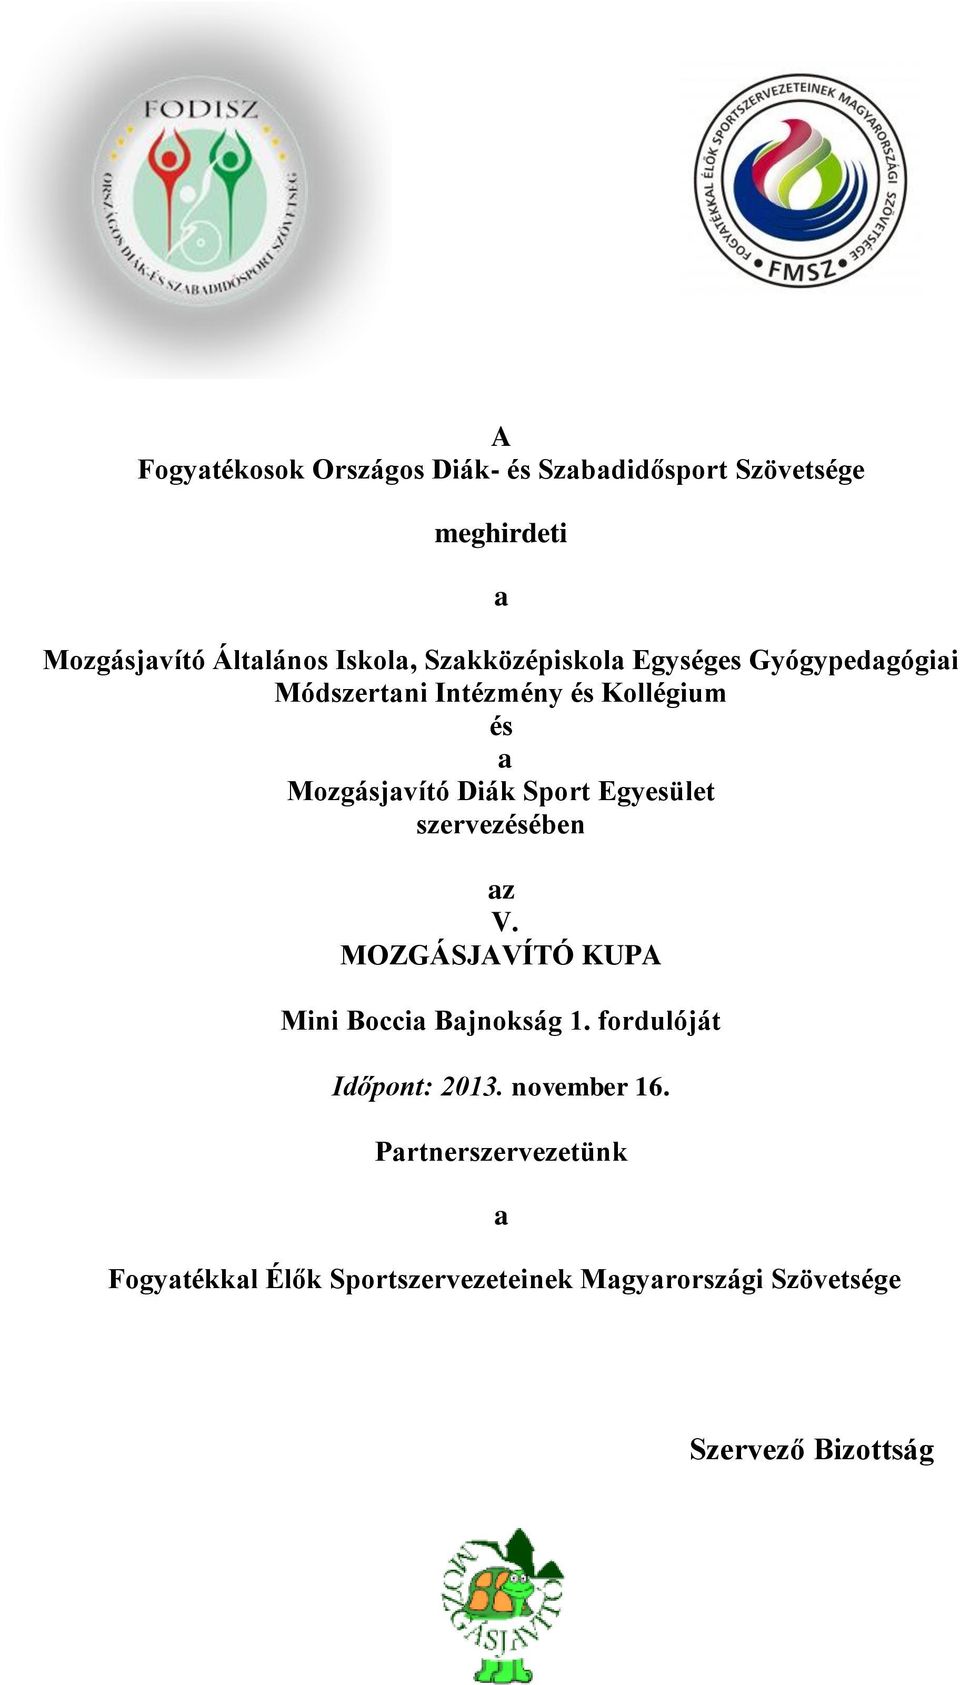 Egyesület szervezésében az V. MOZGÁSJAVÍTÓ KUPA Mini Boccia Bajnokság 1. fordulóját Időpont: 2013.